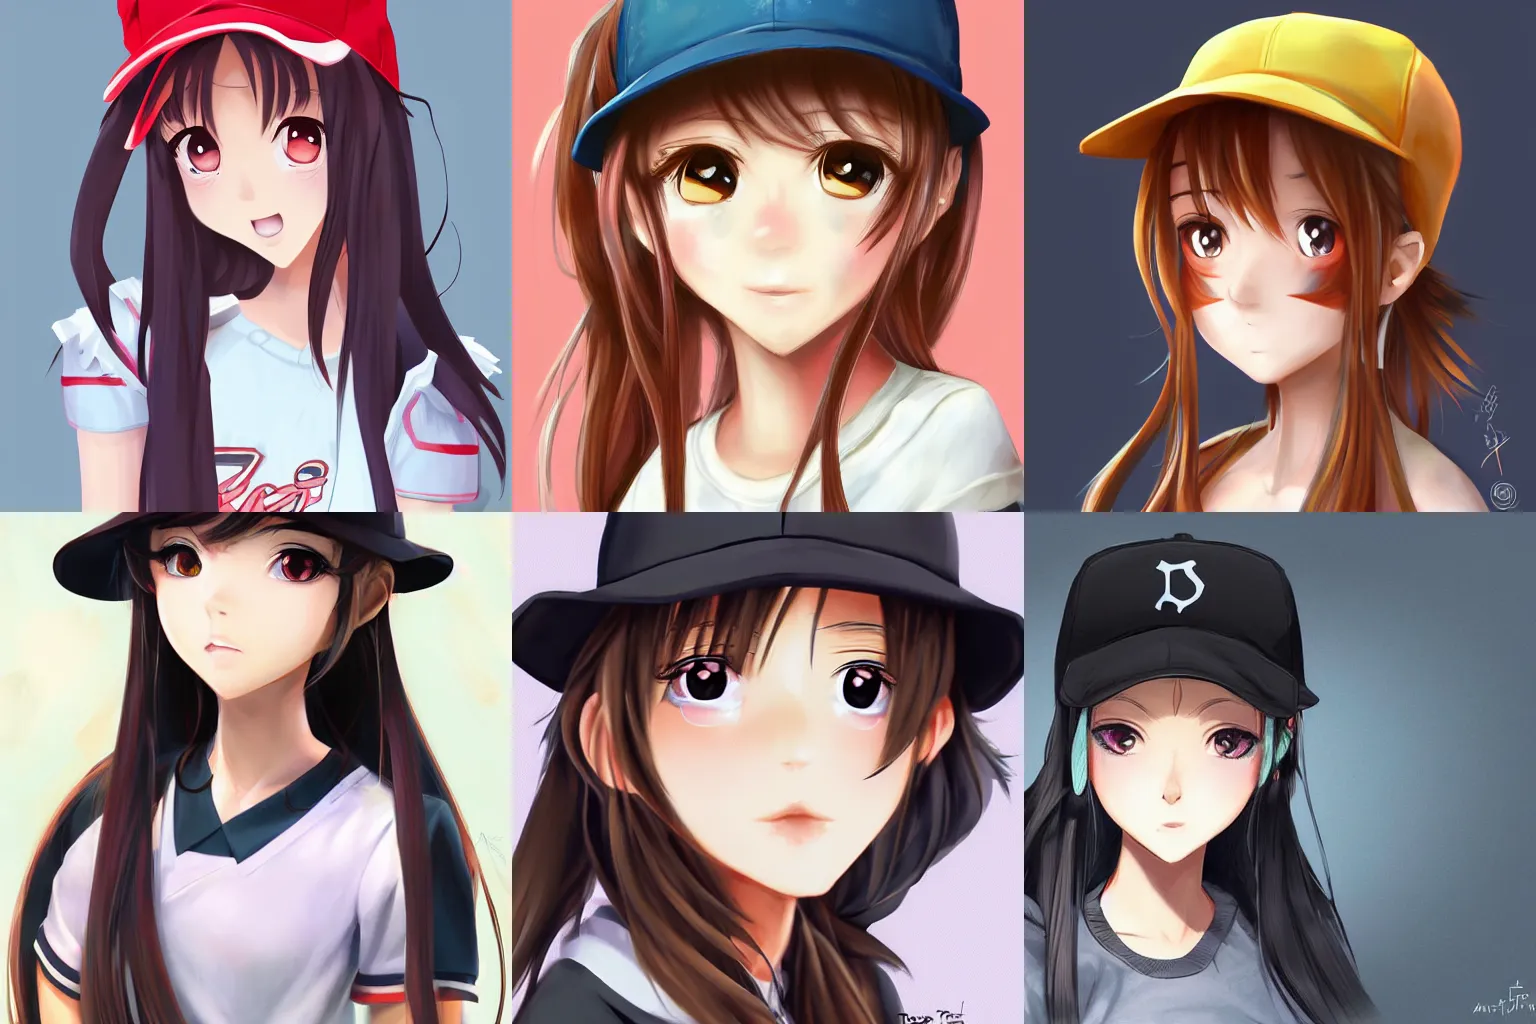 Prompt: portrait of cute anime girl, long hair, baseball hat, ponytail, trending on artstation, art by tigerjune.